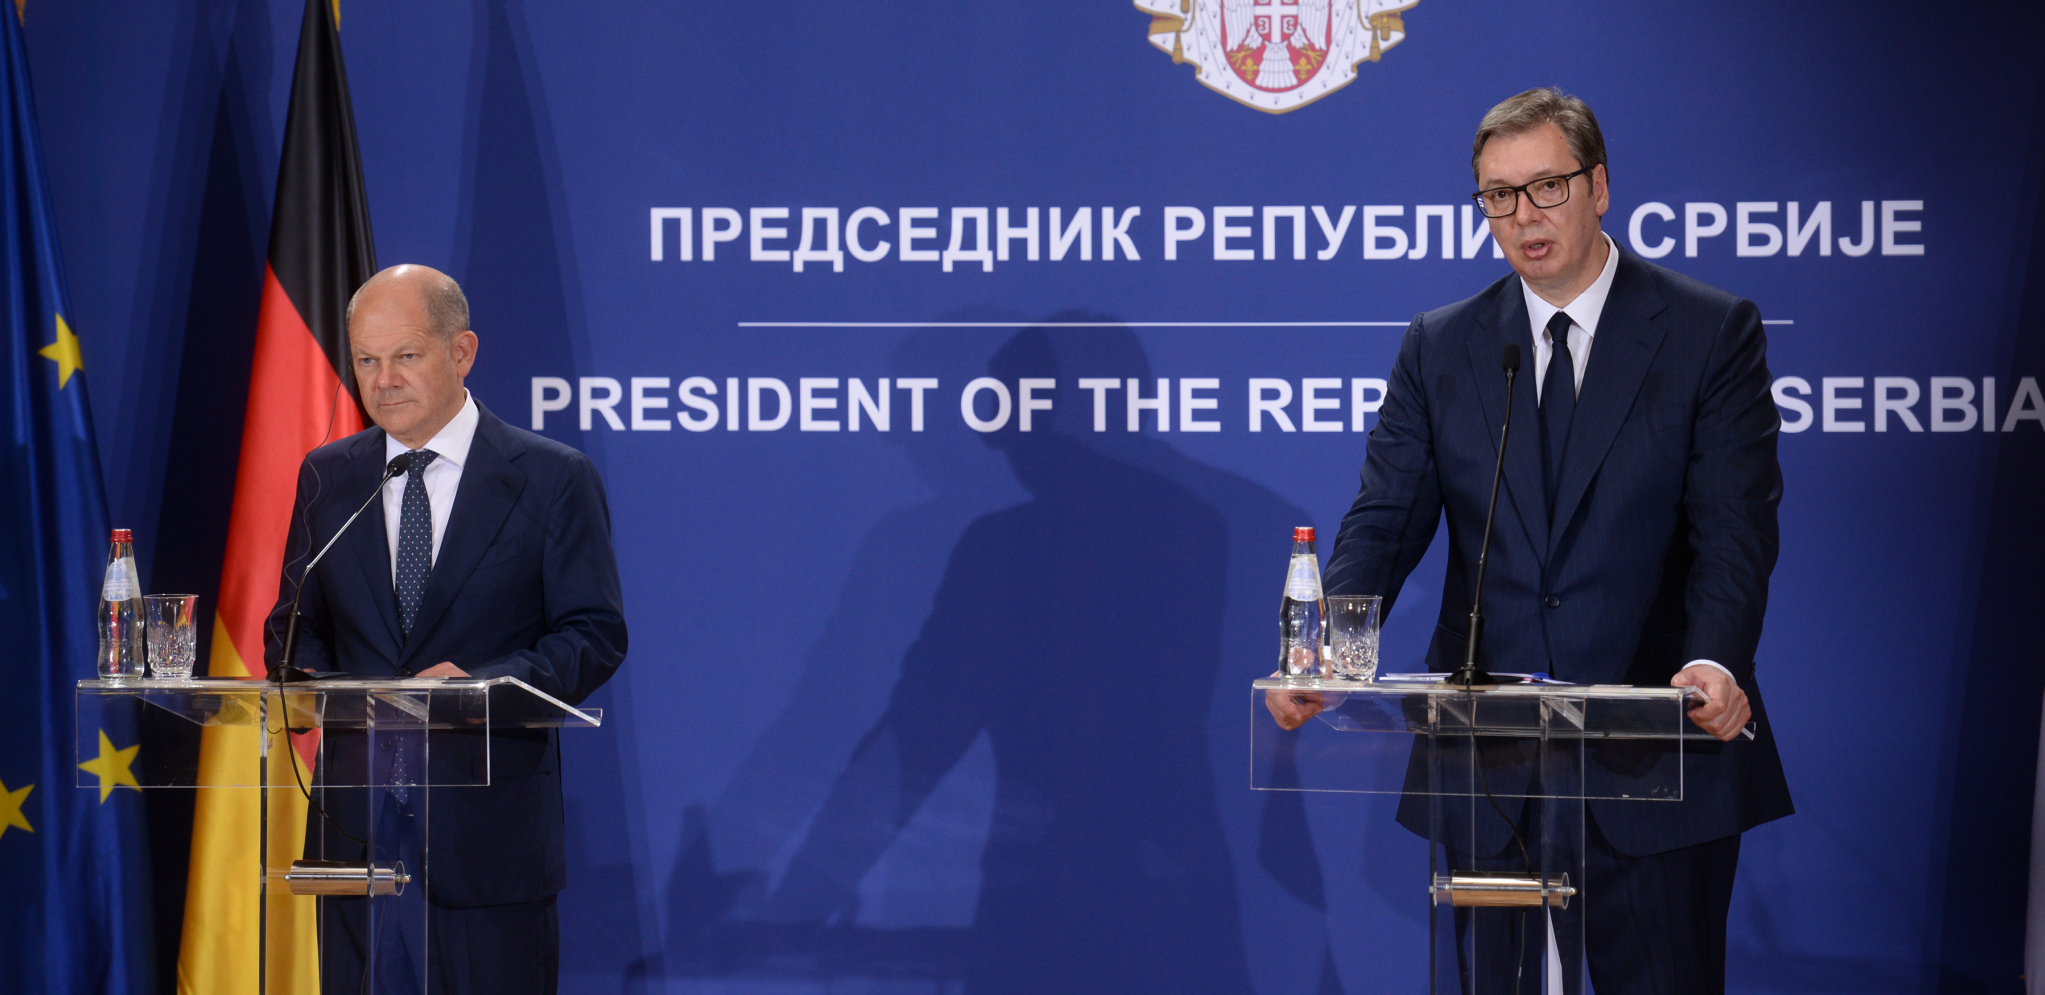 VUČIĆ I ŠOLC SE OBRATILI NAKON SASTANKA Dva lidera razgovarala o mnogim teškim temama i perspektivi Srbije (FOTO/VIDEO)